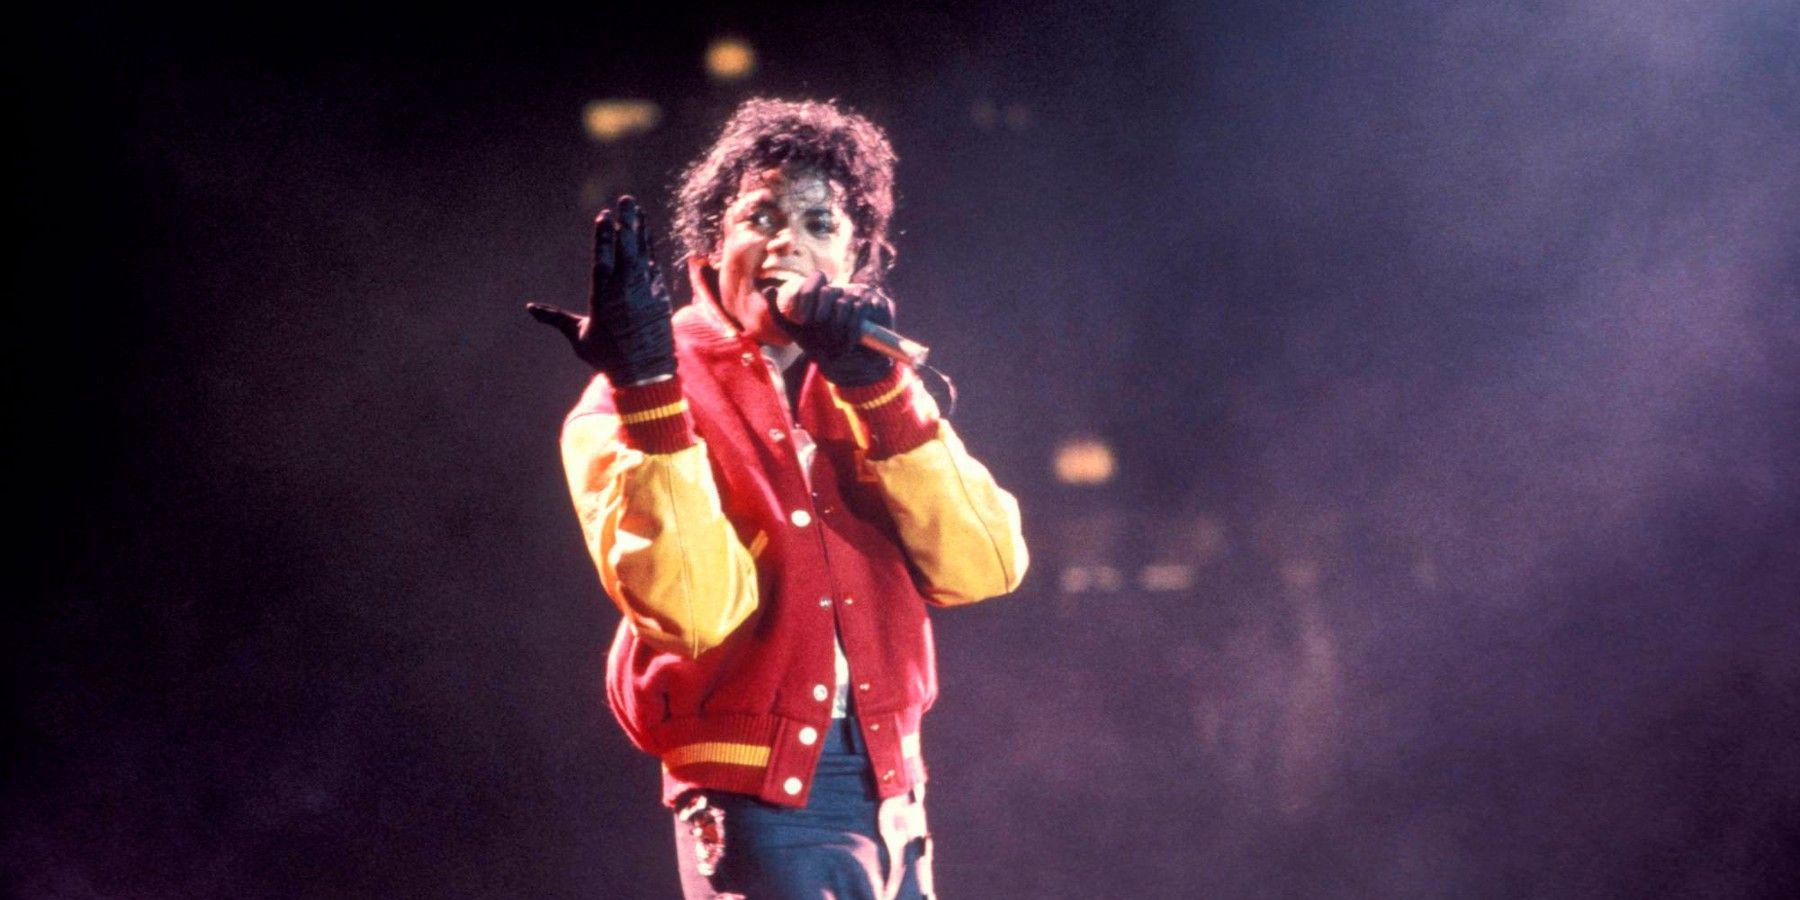 Biografia de Michael Jackson pelo diretor Antoine Fuqua em andamento